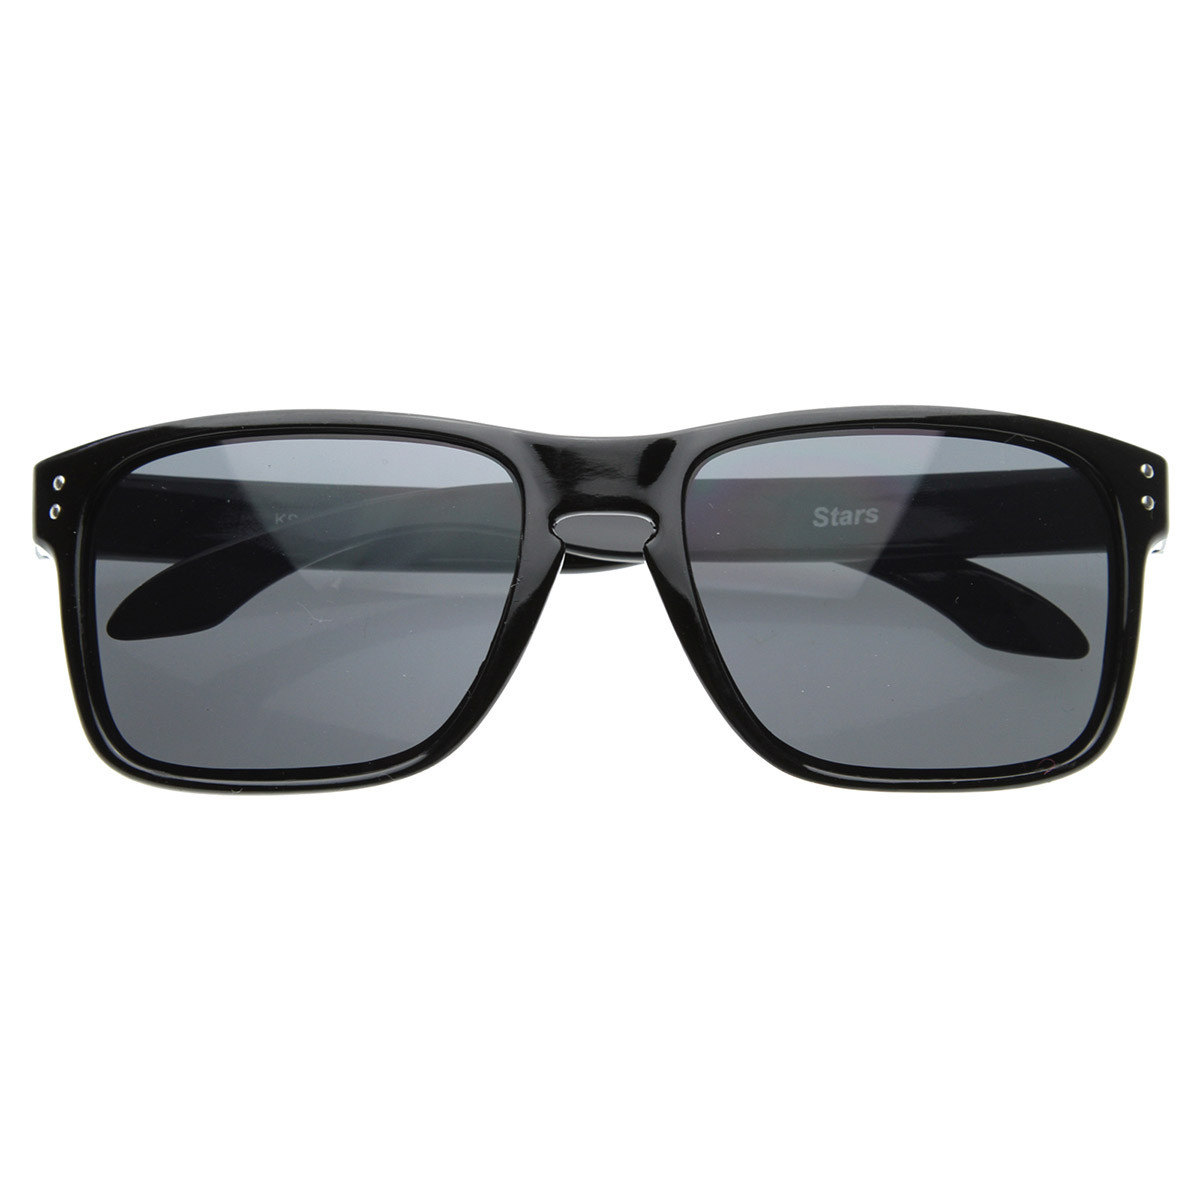 Designer Inspired Active Lifestyle Square Sunglasses With Keyhole Nose Bridge - Shiny Black